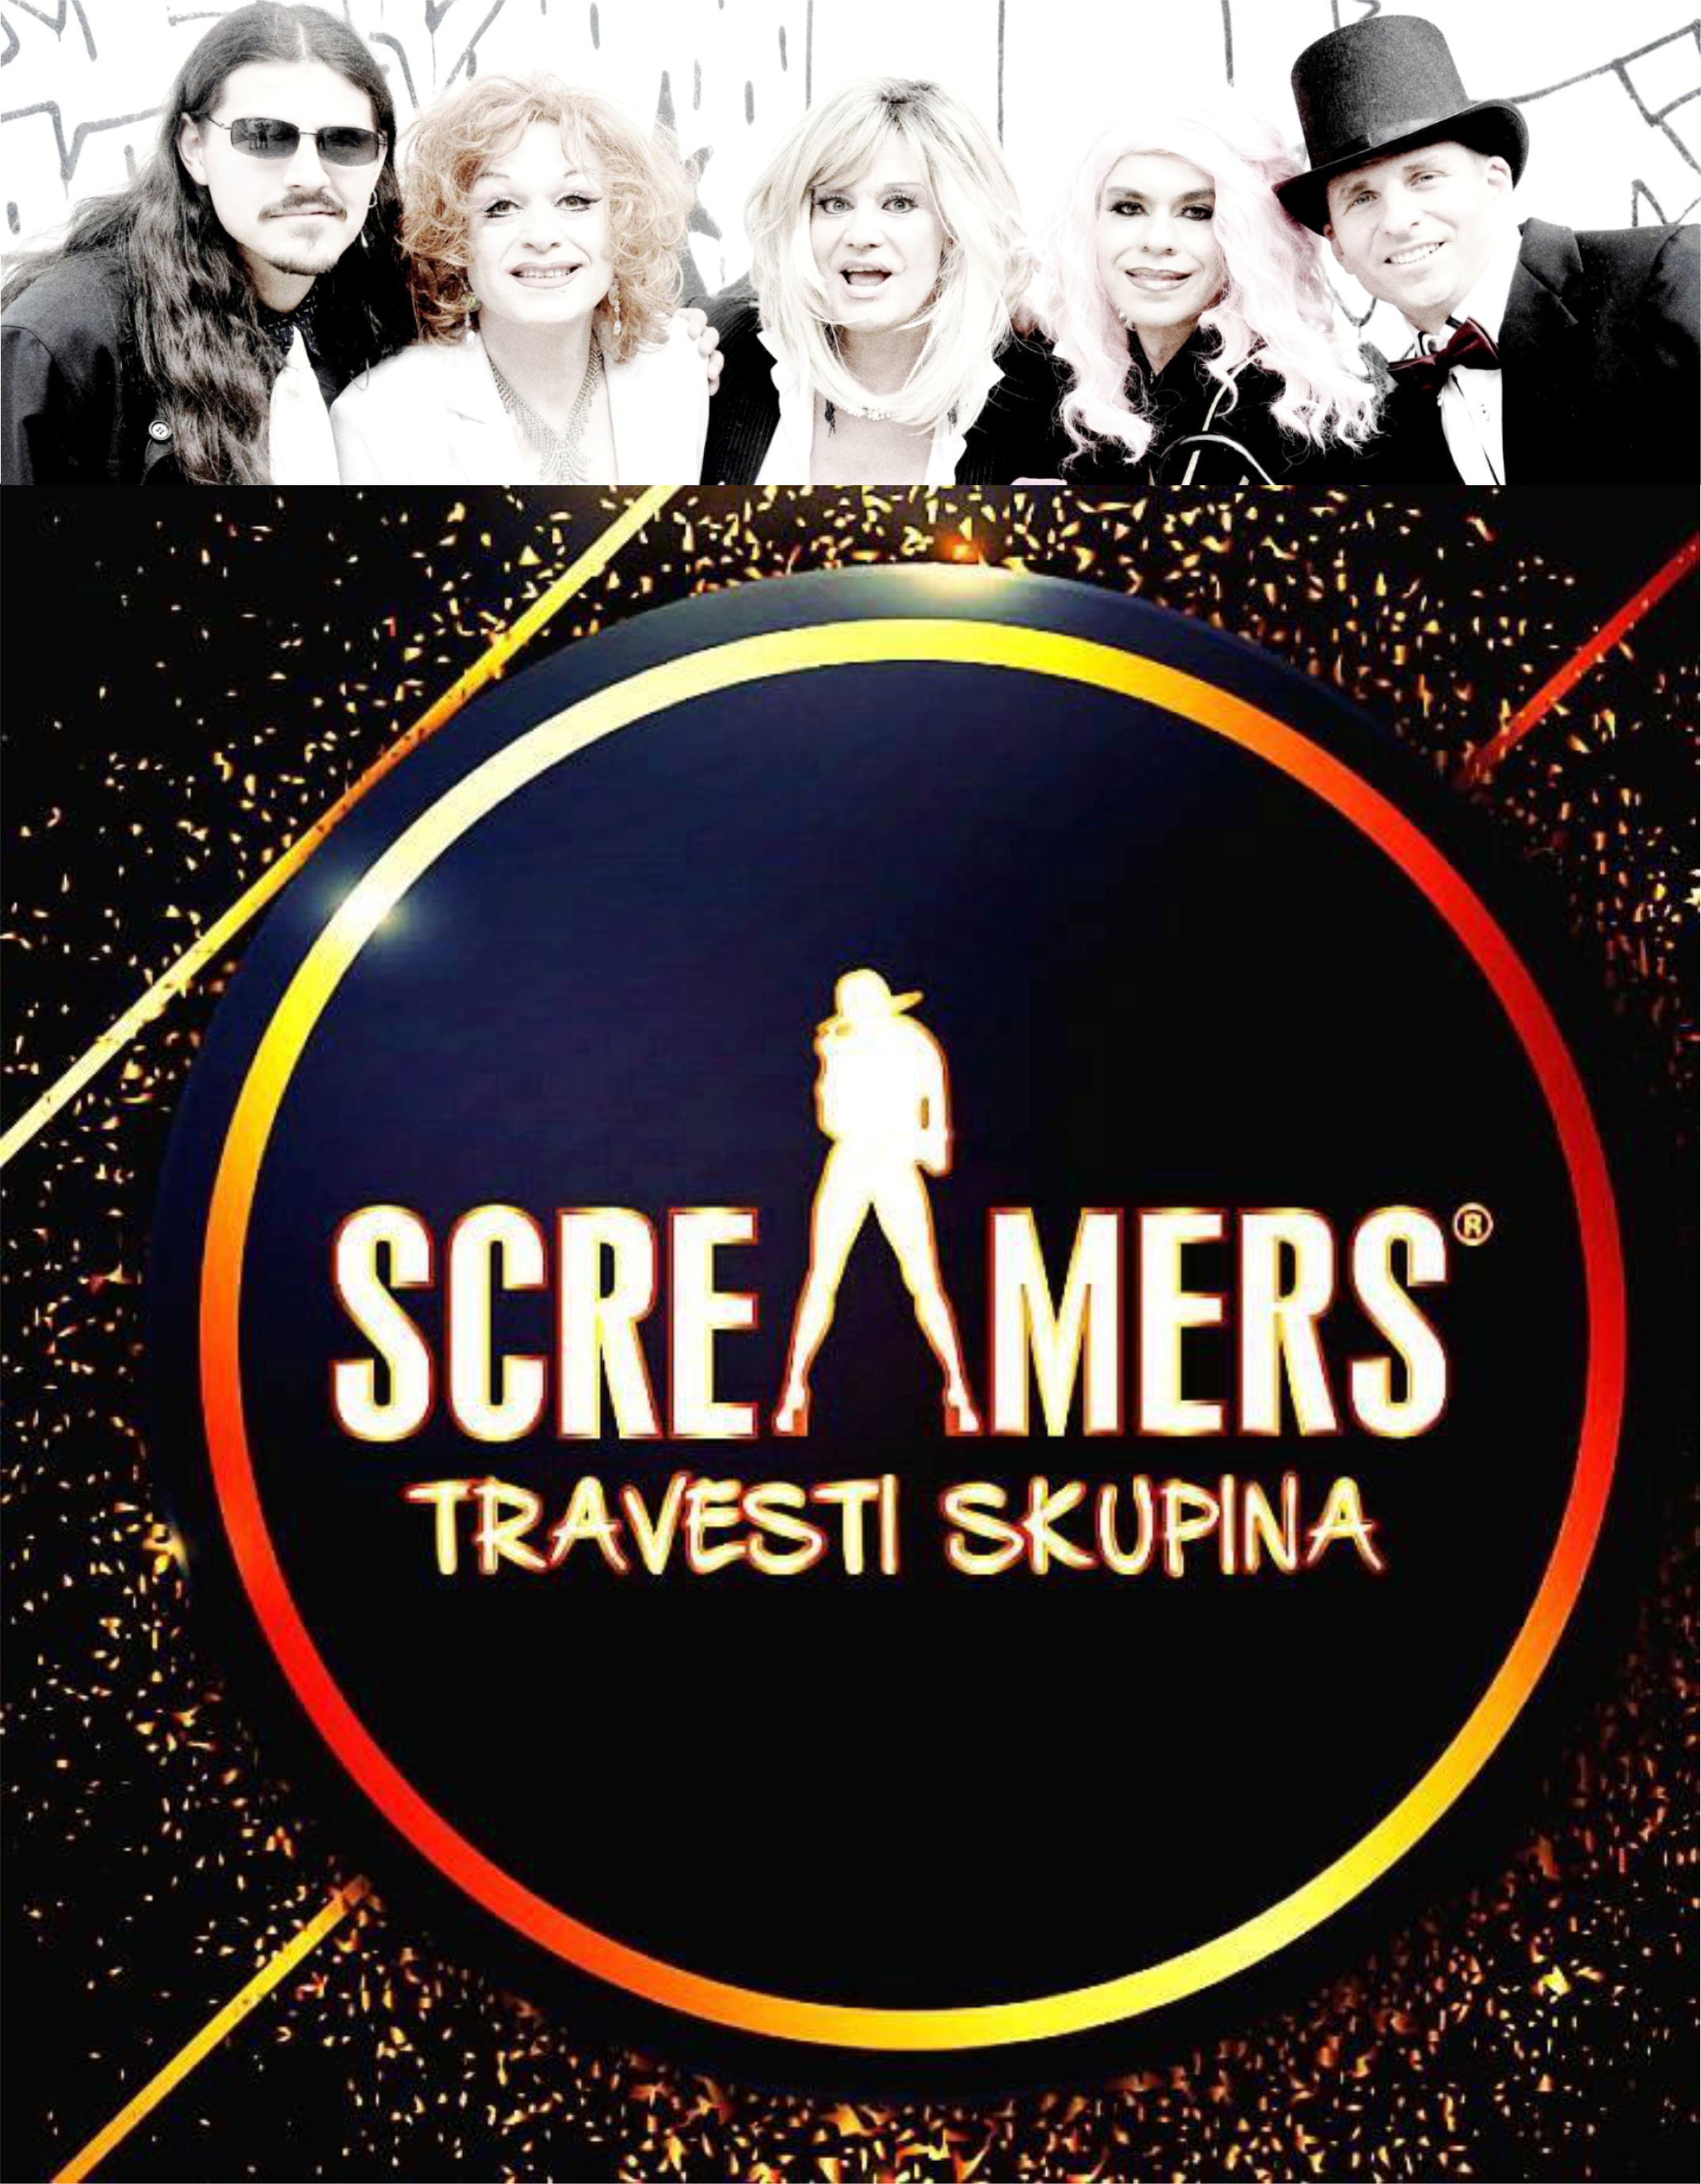 Screamers - Tuláci časem (přidané představení)